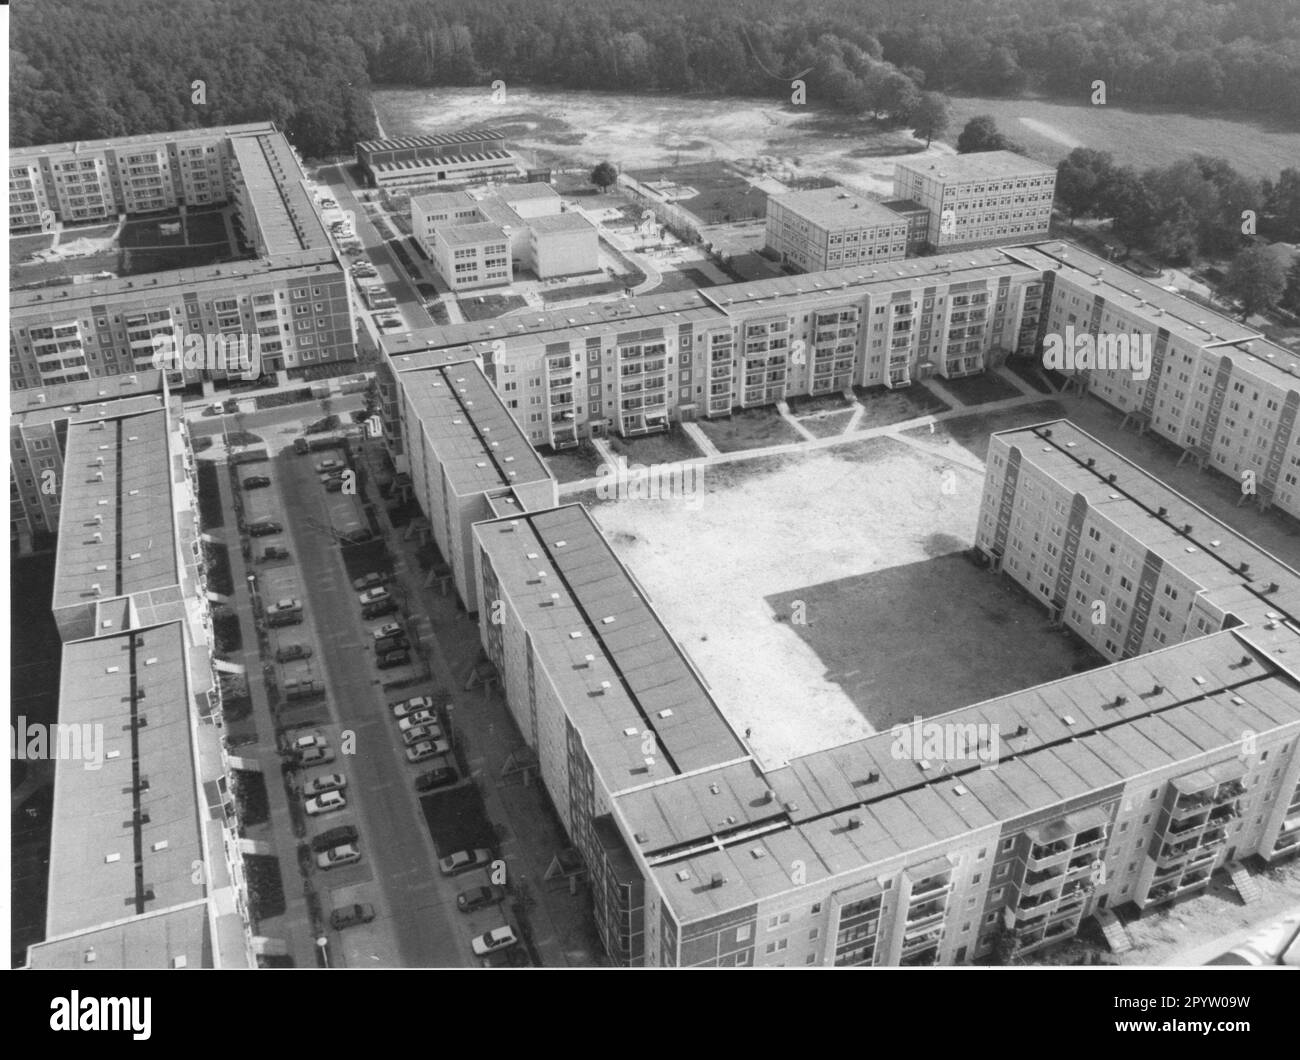 Blick von oben auf das Wohngebiet Drewitz in Potsdam. Neue Gebäude. Vorgefertigte Gebäude. Luftaufnahme. Foto: MAZ/Peter Sengpiehl, 20.09.1993 [automatisierte Übersetzung] Stockfoto